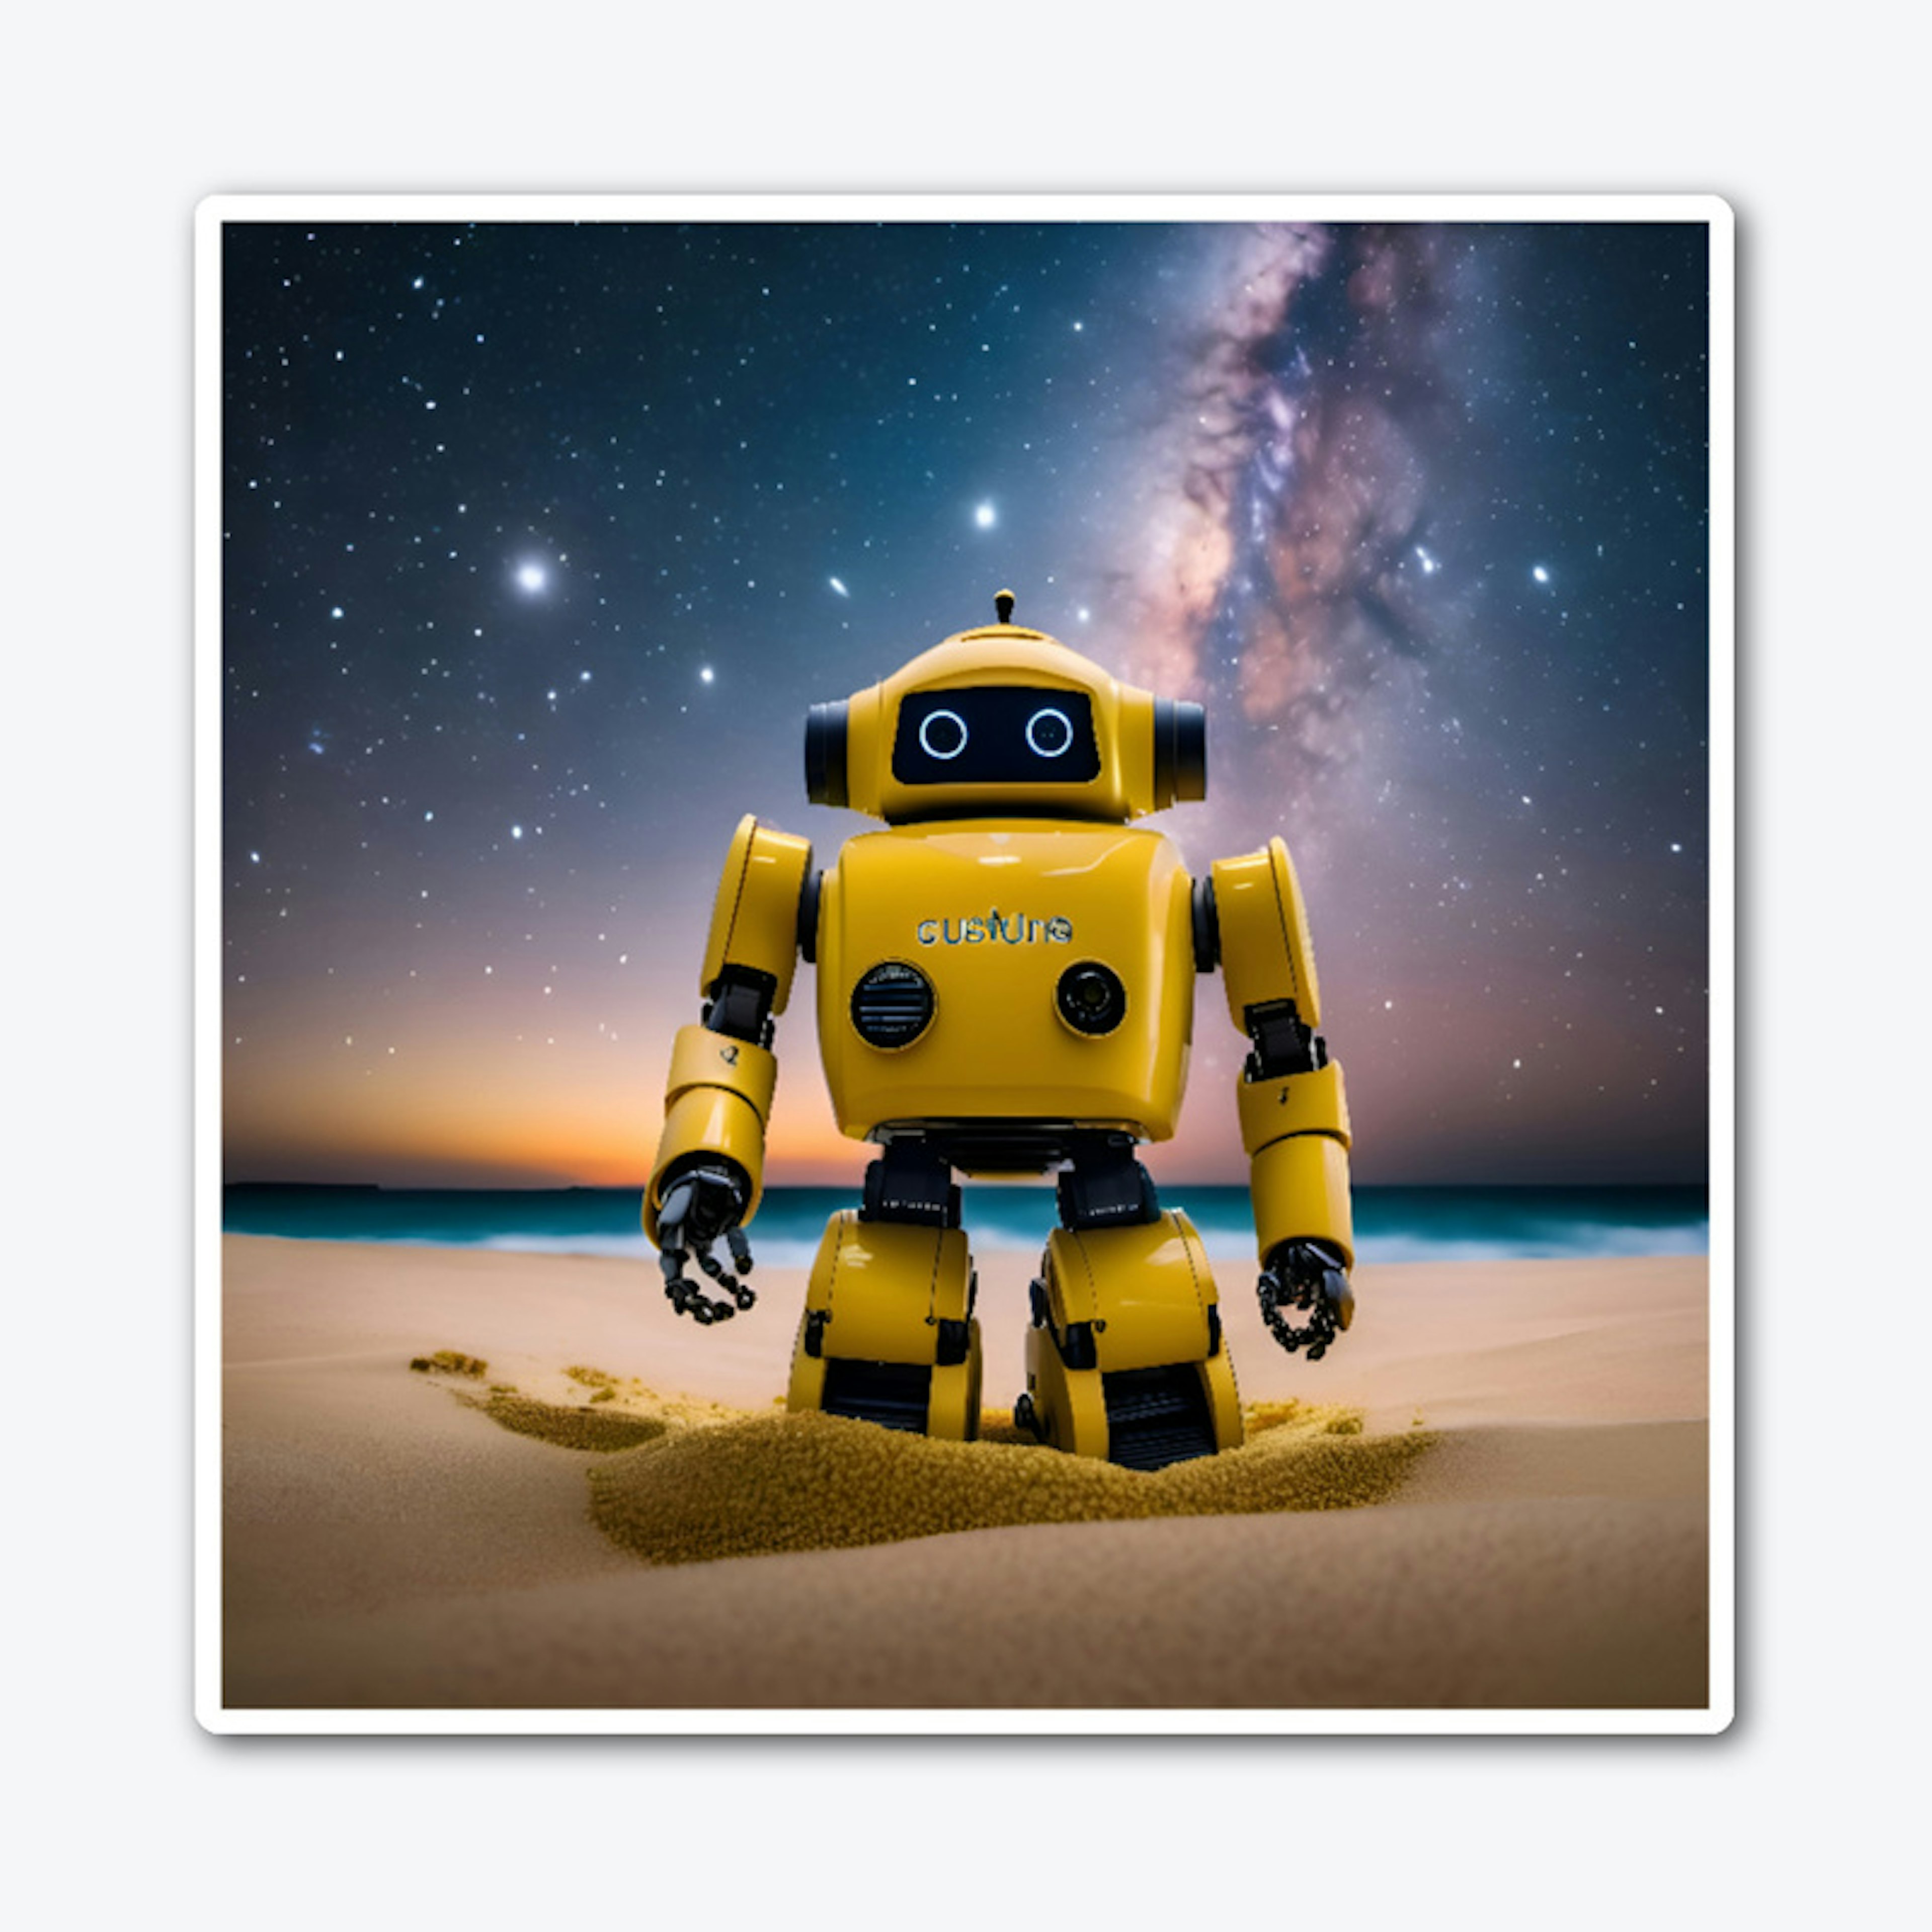 A robot at the beach at night